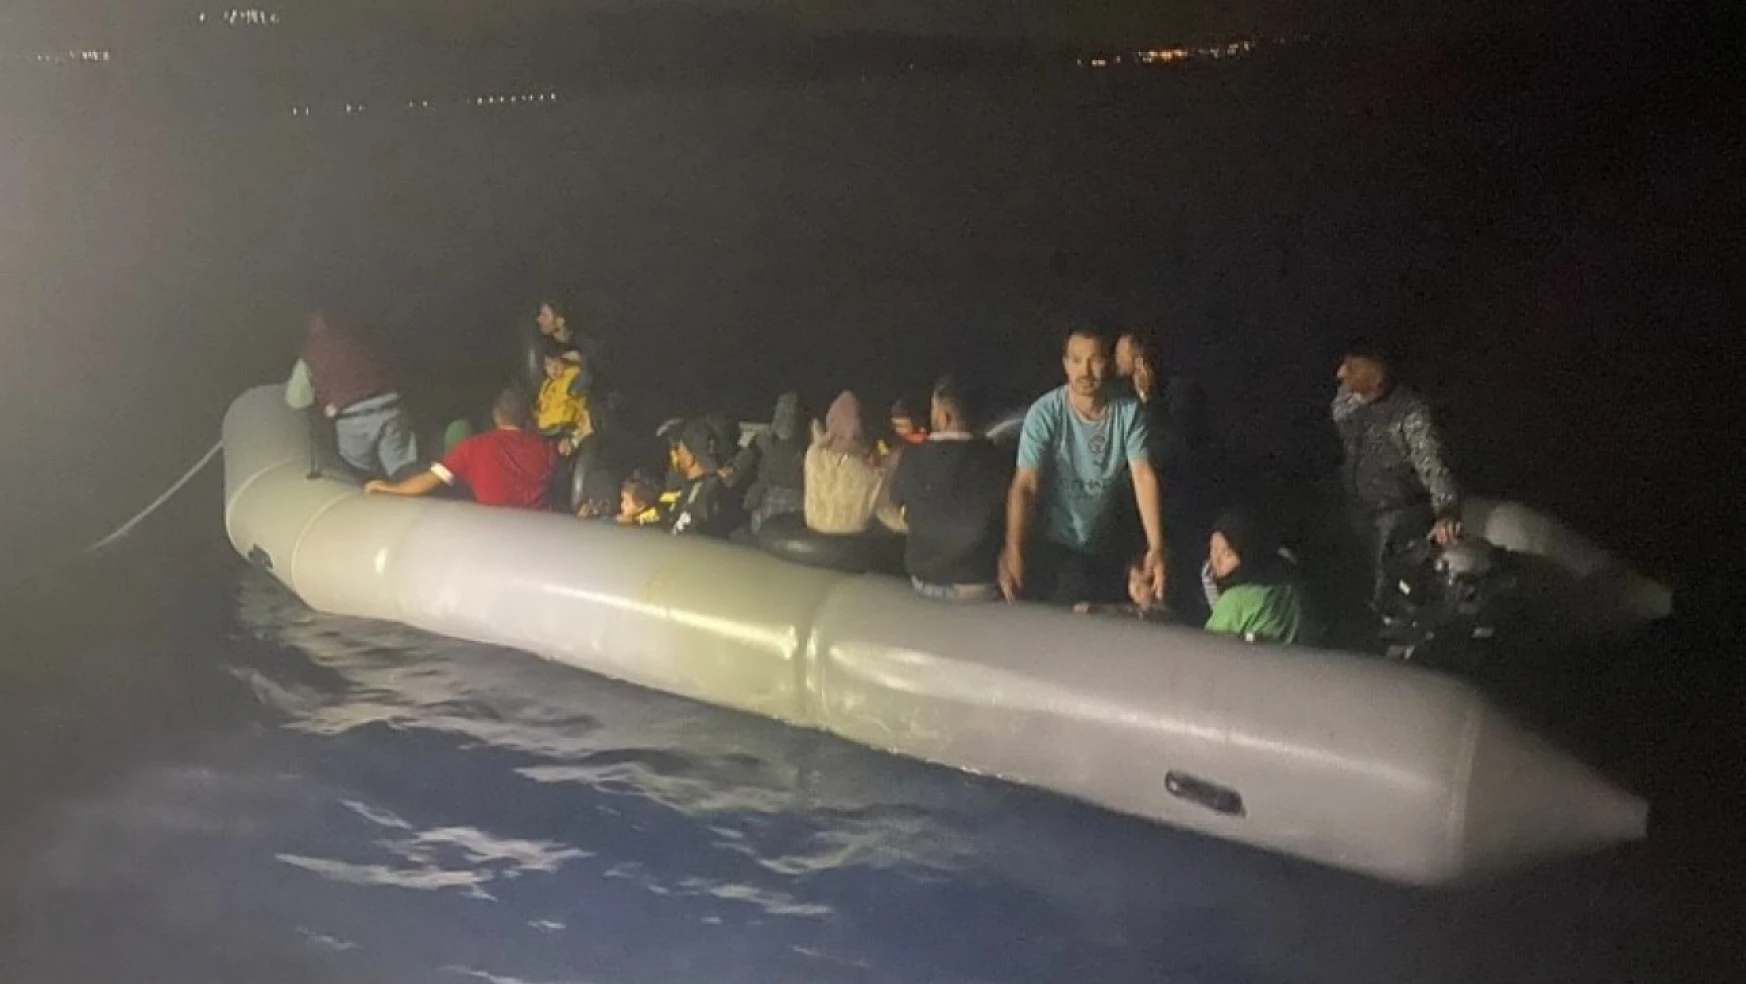 Yunan unsurlarınca ölüme terk edilen 33 kaçak göçmen kurtarıldı